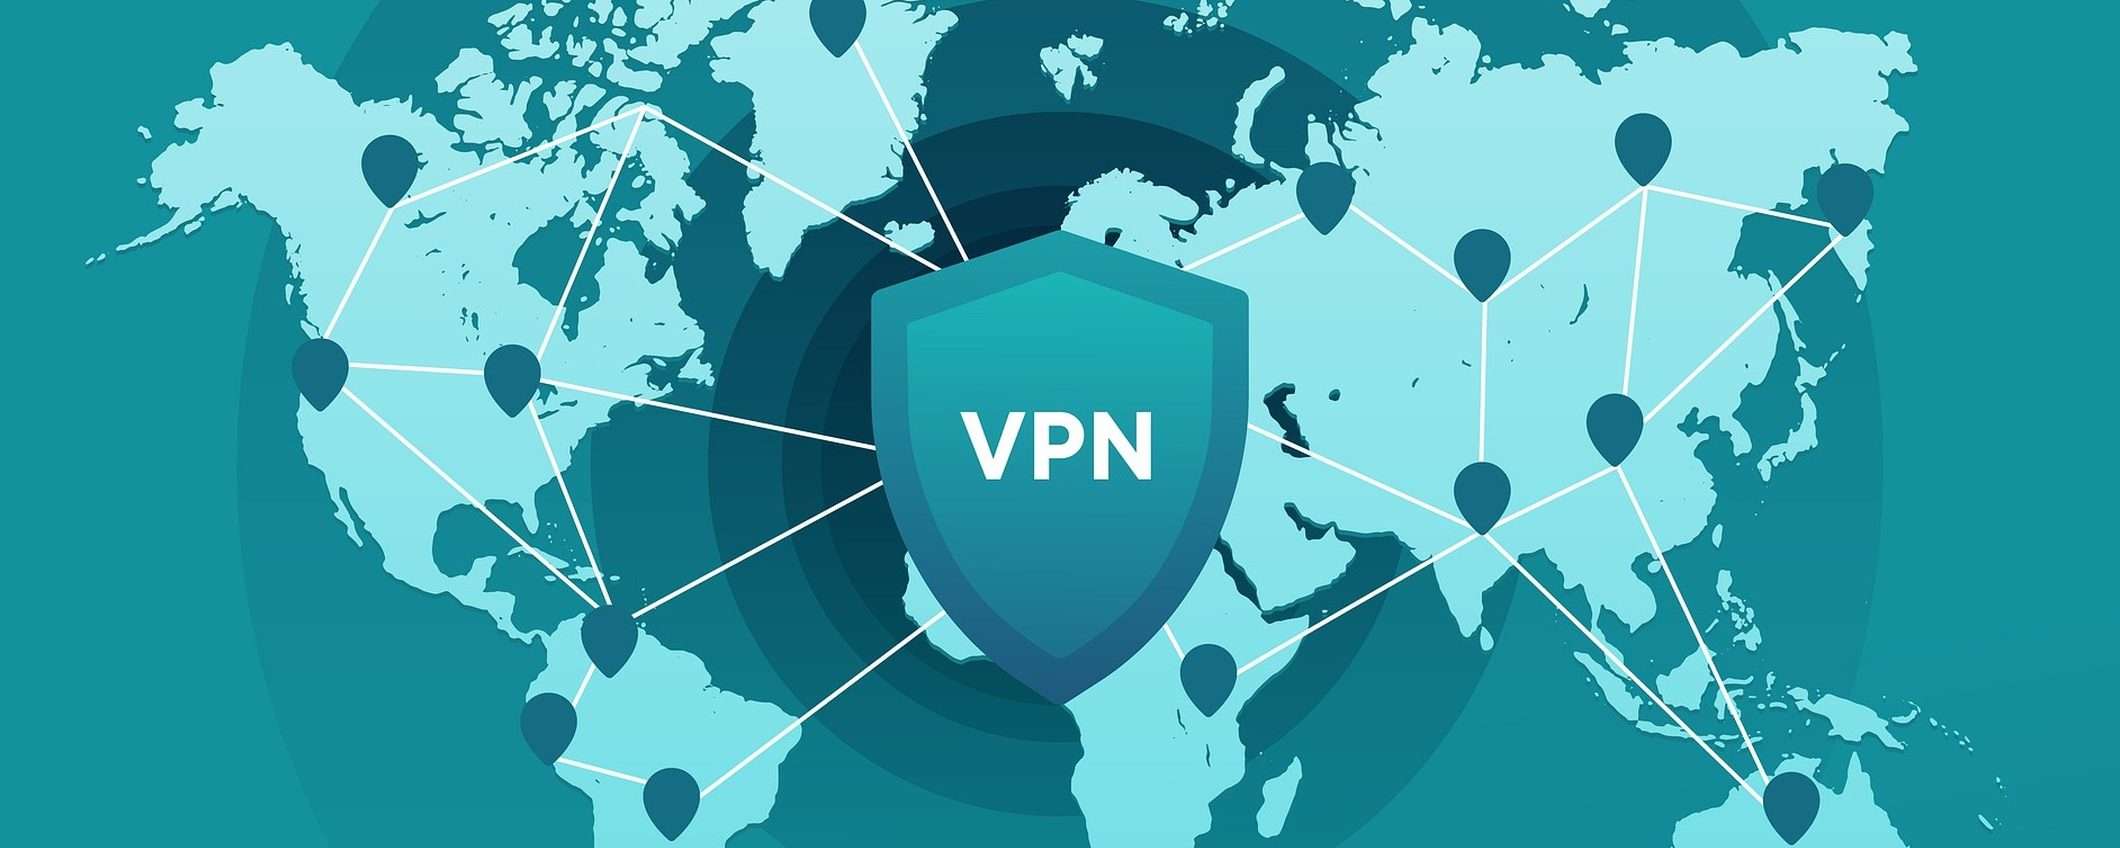 La Russia ha paura delle VPN: 20 quelle già bloccate